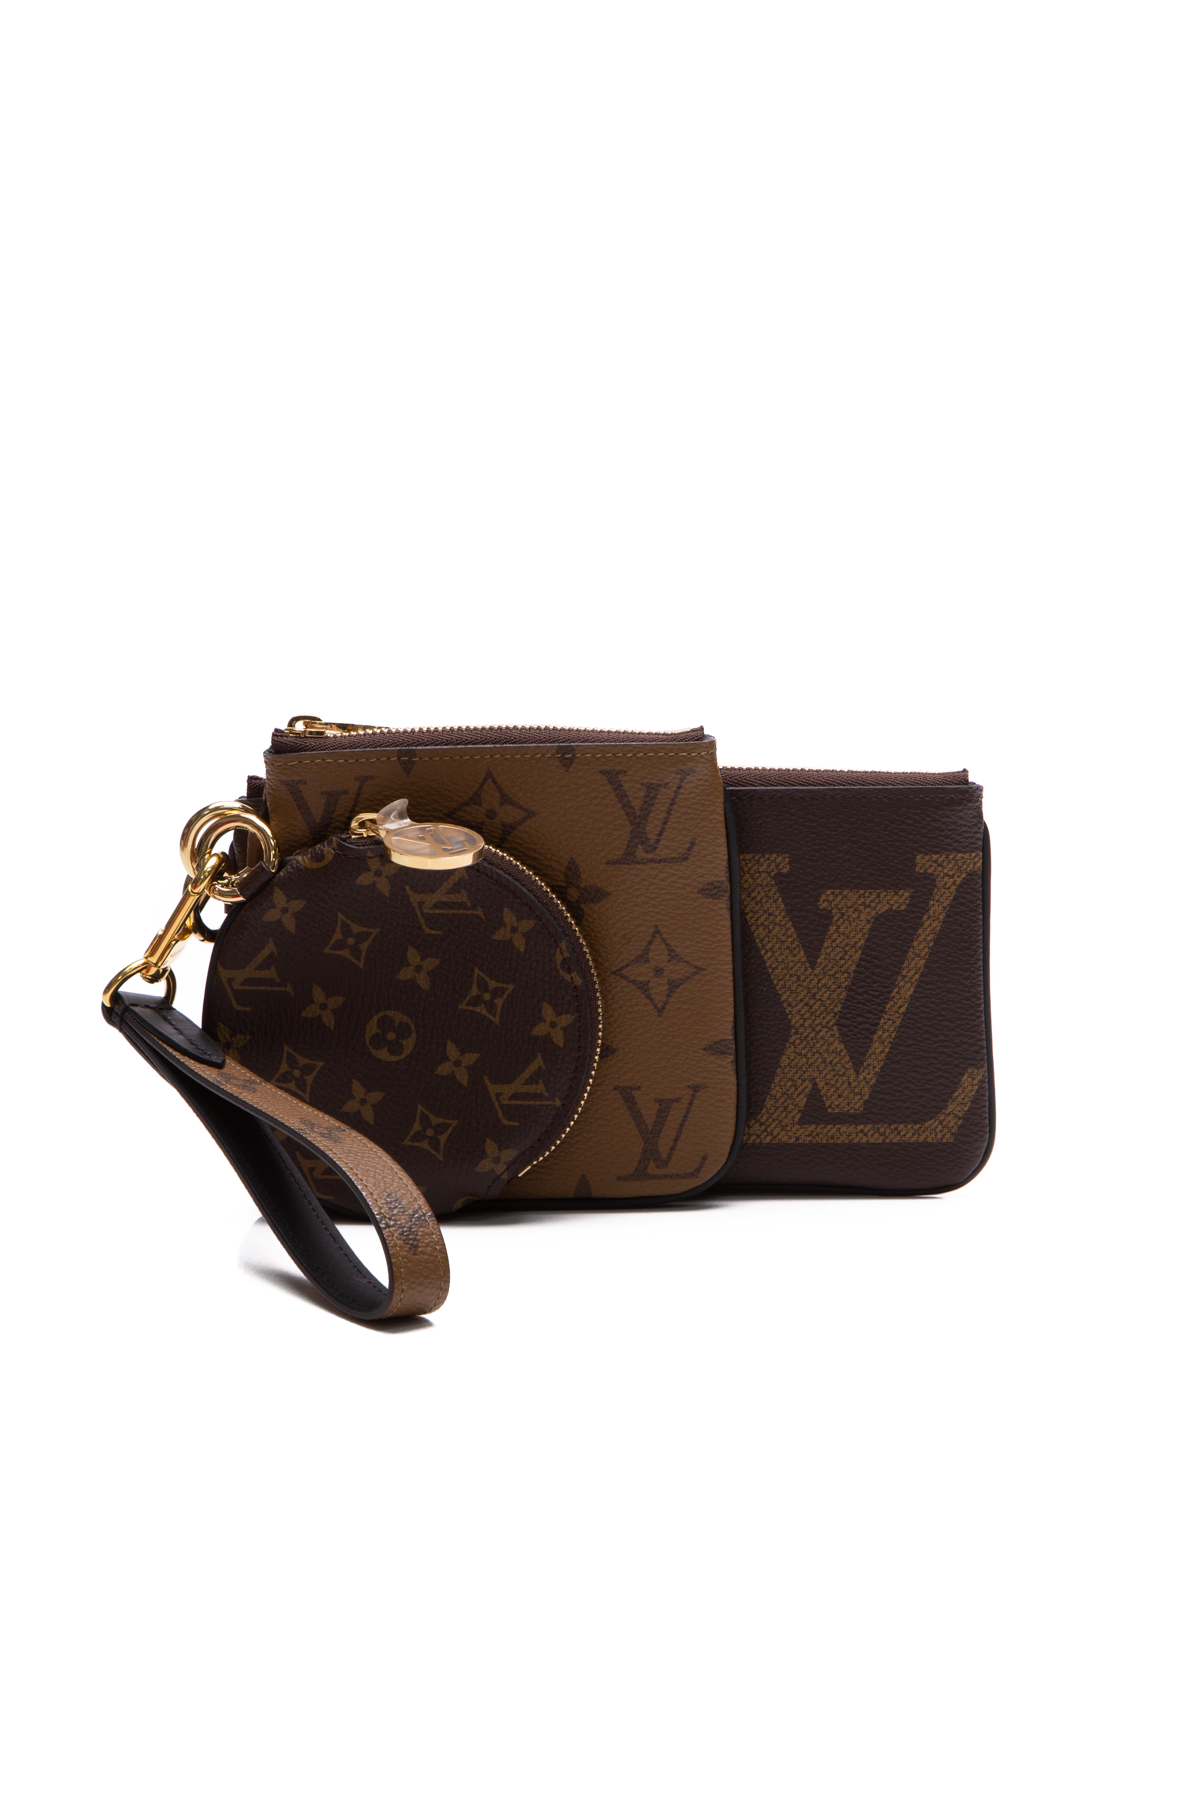 Louis Vuitton, Bags, Authentic Brand New Louis Vuitton Trio Messenger Bag  Complete Set